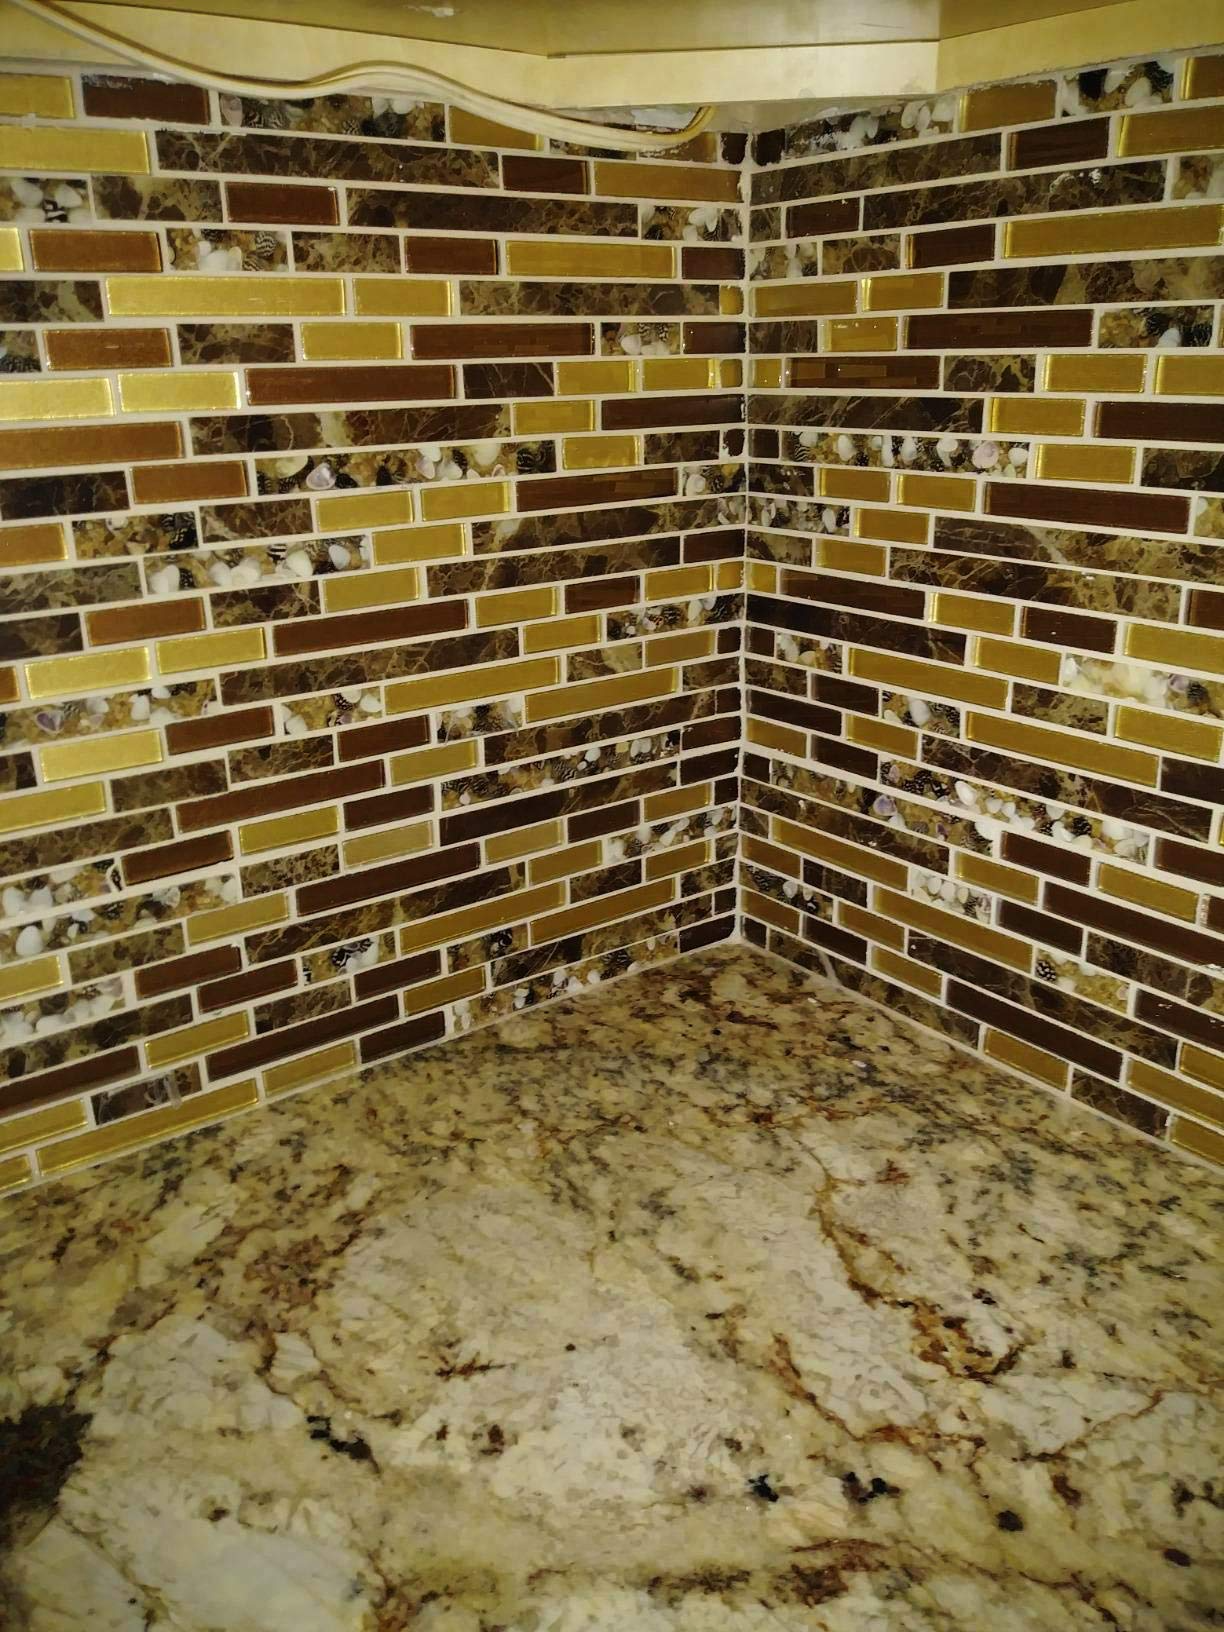 Art3d Genuine Shell Mosaic Tile Artificial Resin Marble Tile for Kitchen Backsplash or Bathroom Backsplash (5 Pack)